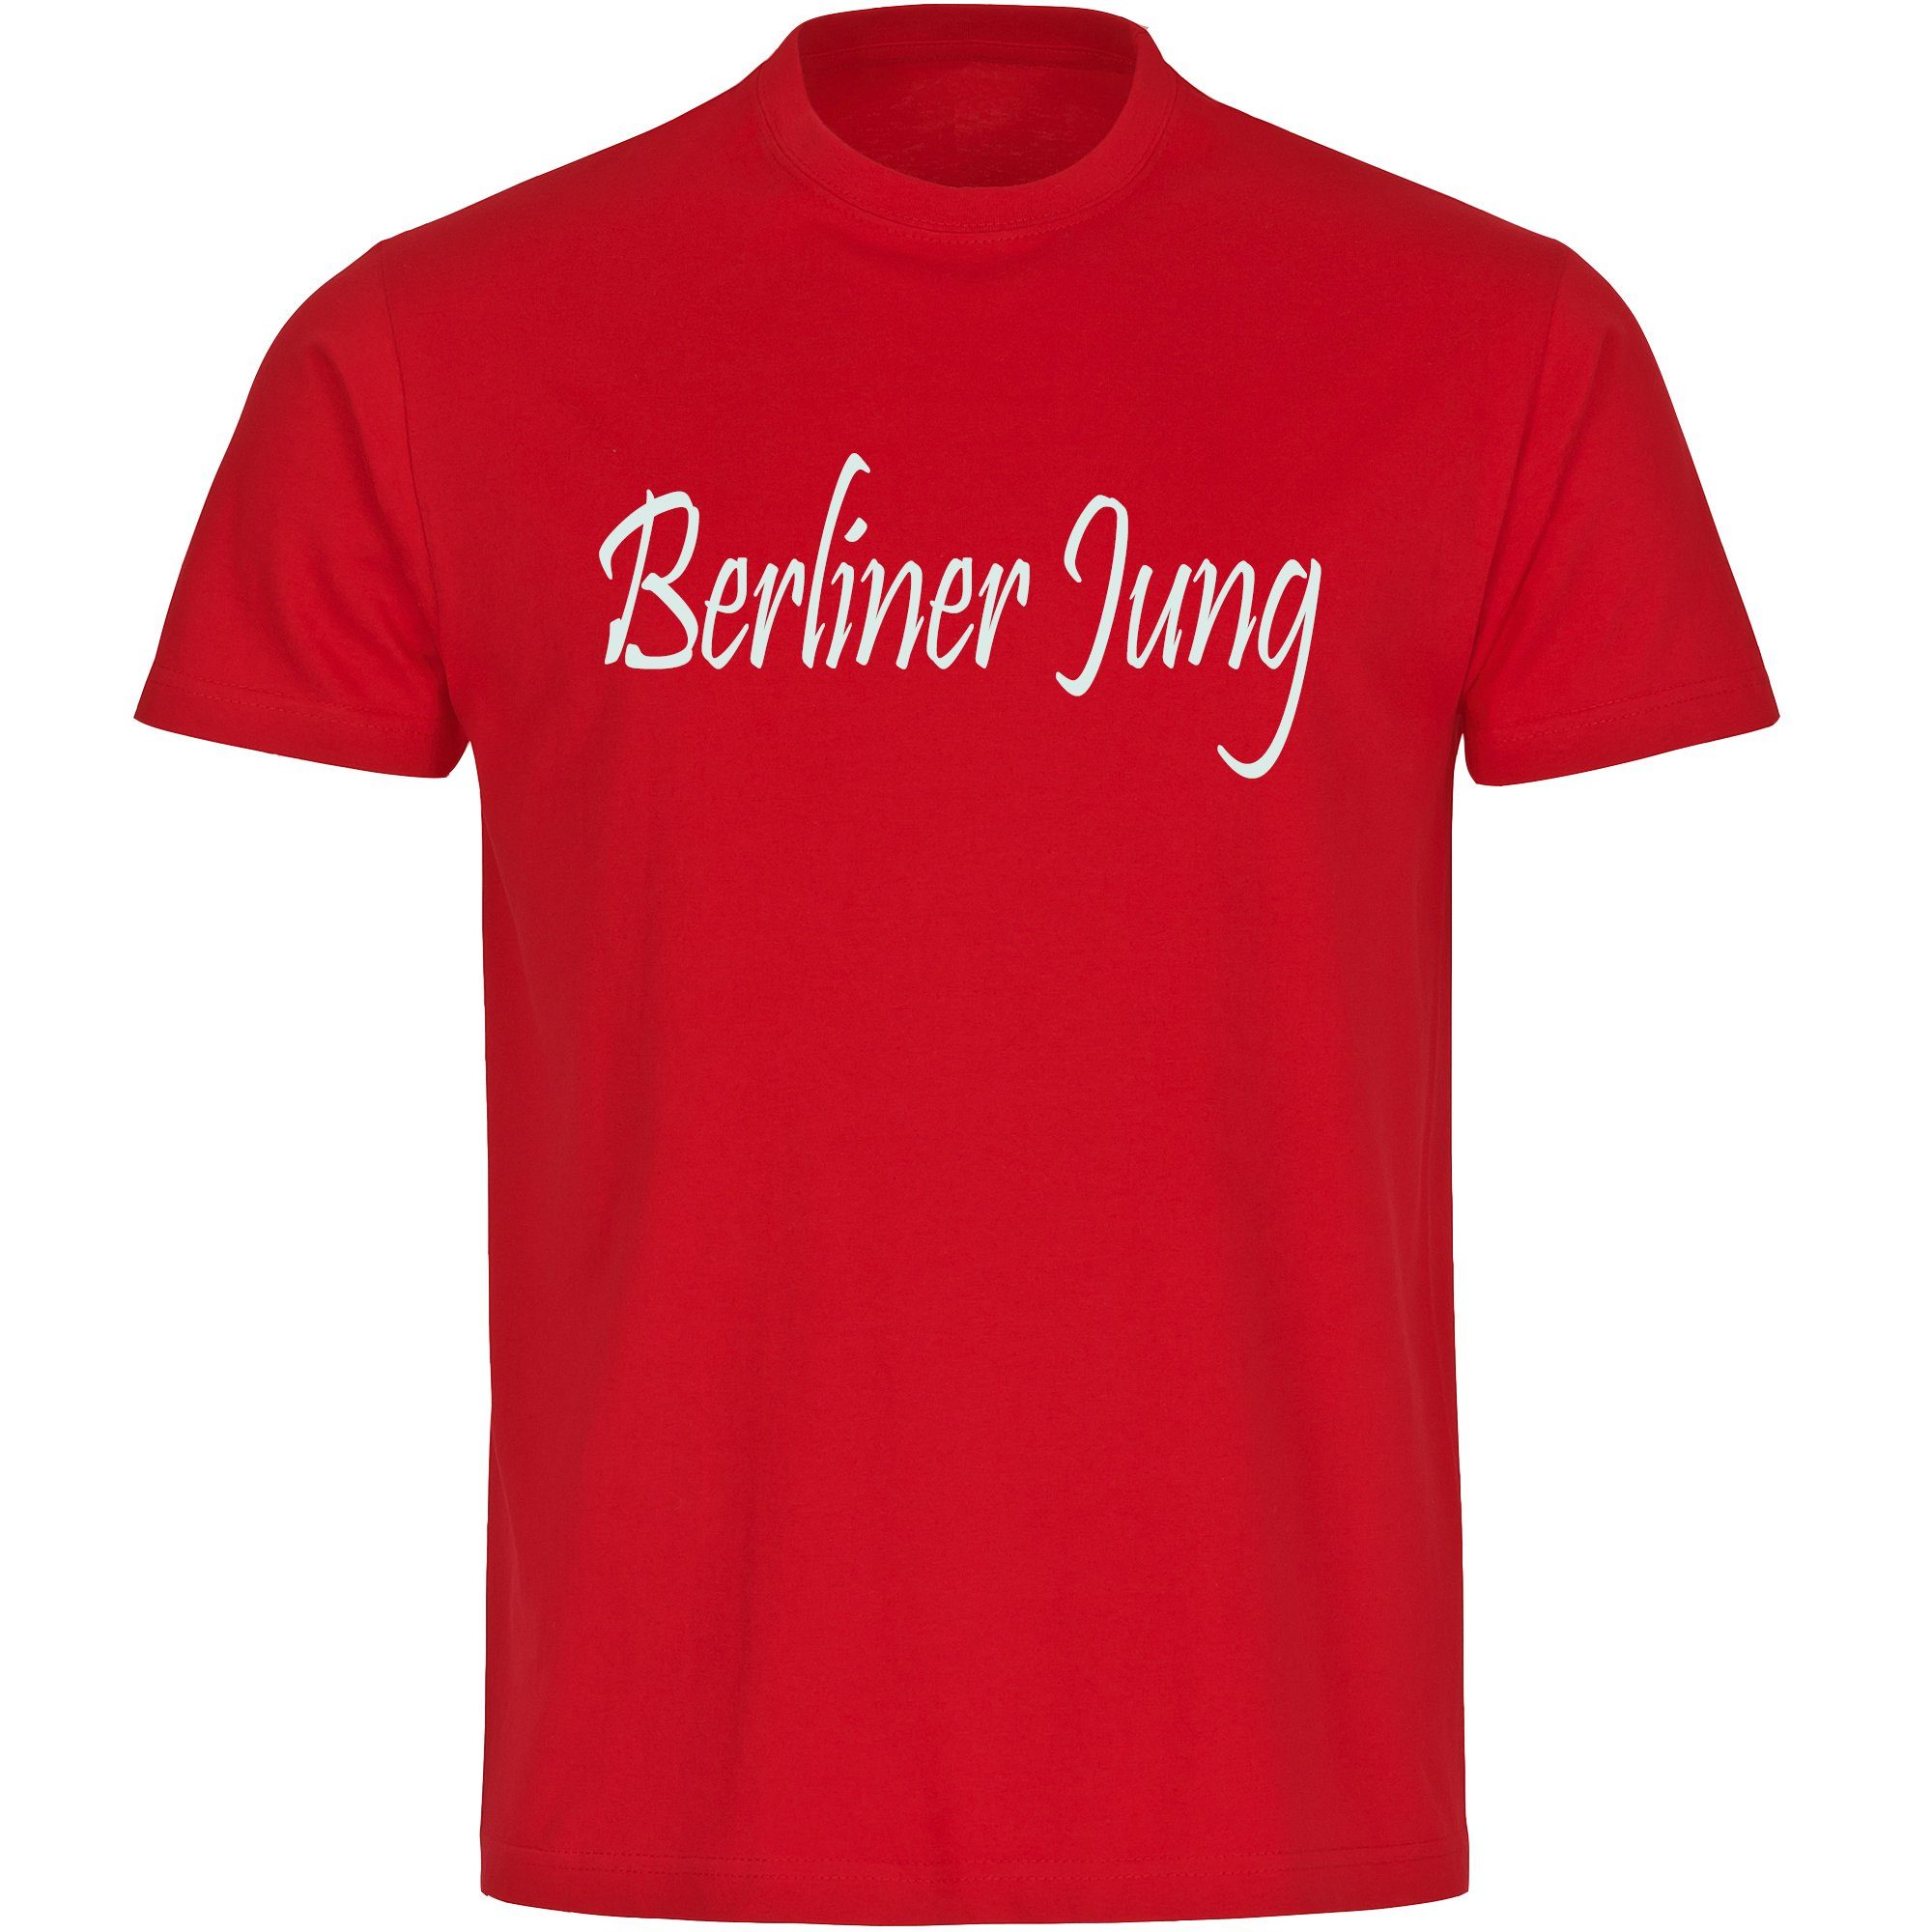 multifanshop T-Shirt Herren Berlin rot - Berliner Jung - Männer